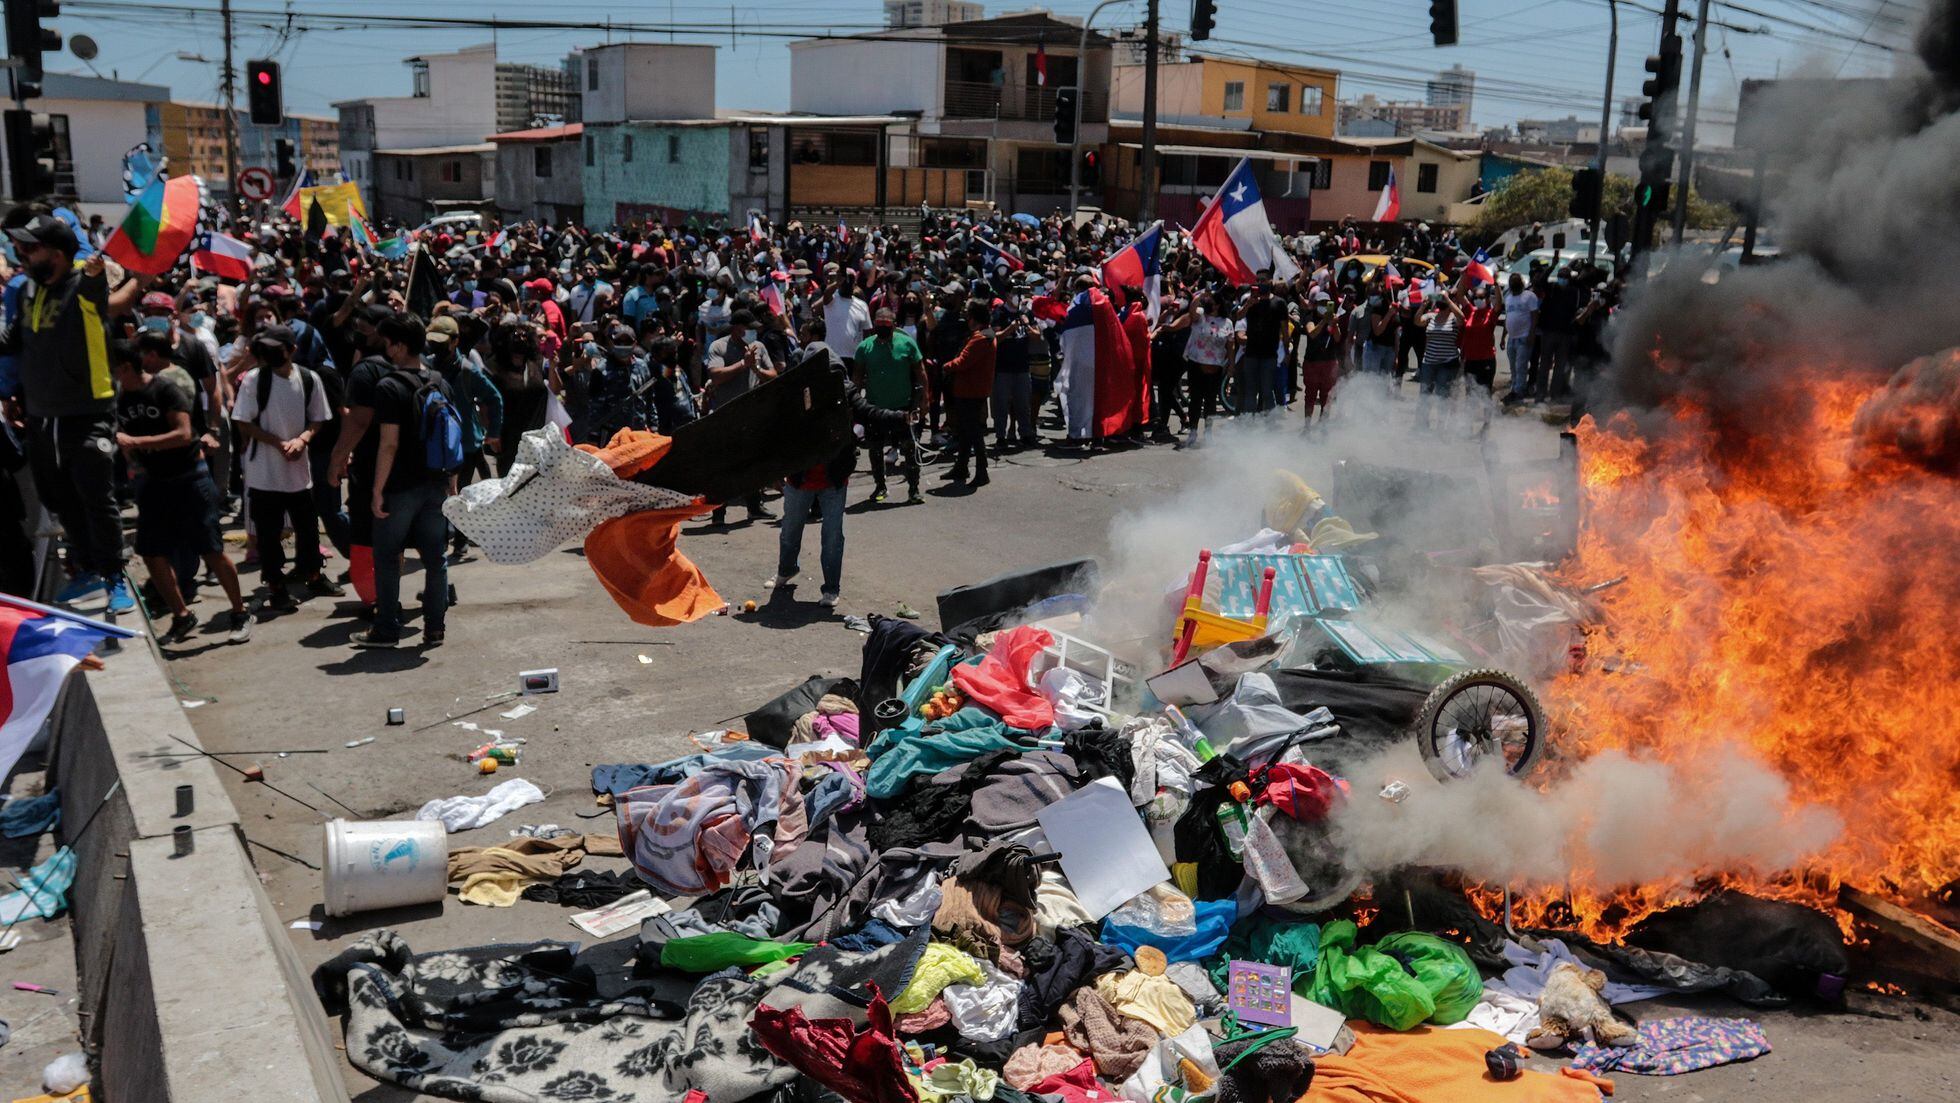 Colchones y juguetes de venezolanos sin techo, quemados tras una marcha contra la inmigración en Chile | Internacional | EL PAÍS